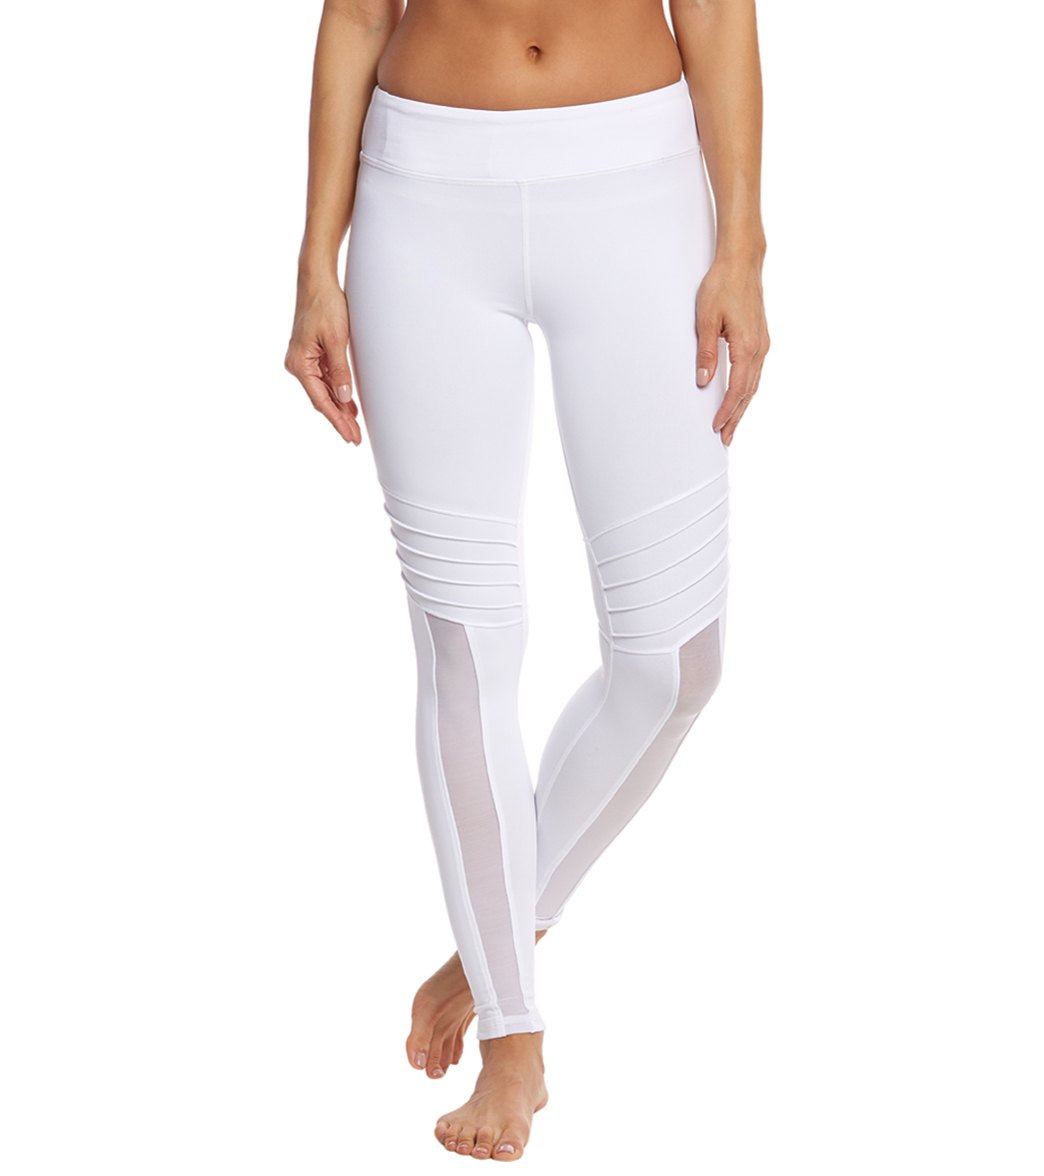 Trina Turk women's geo knit fitness leggings - white medium elastane/nylon - swimoutlet.com